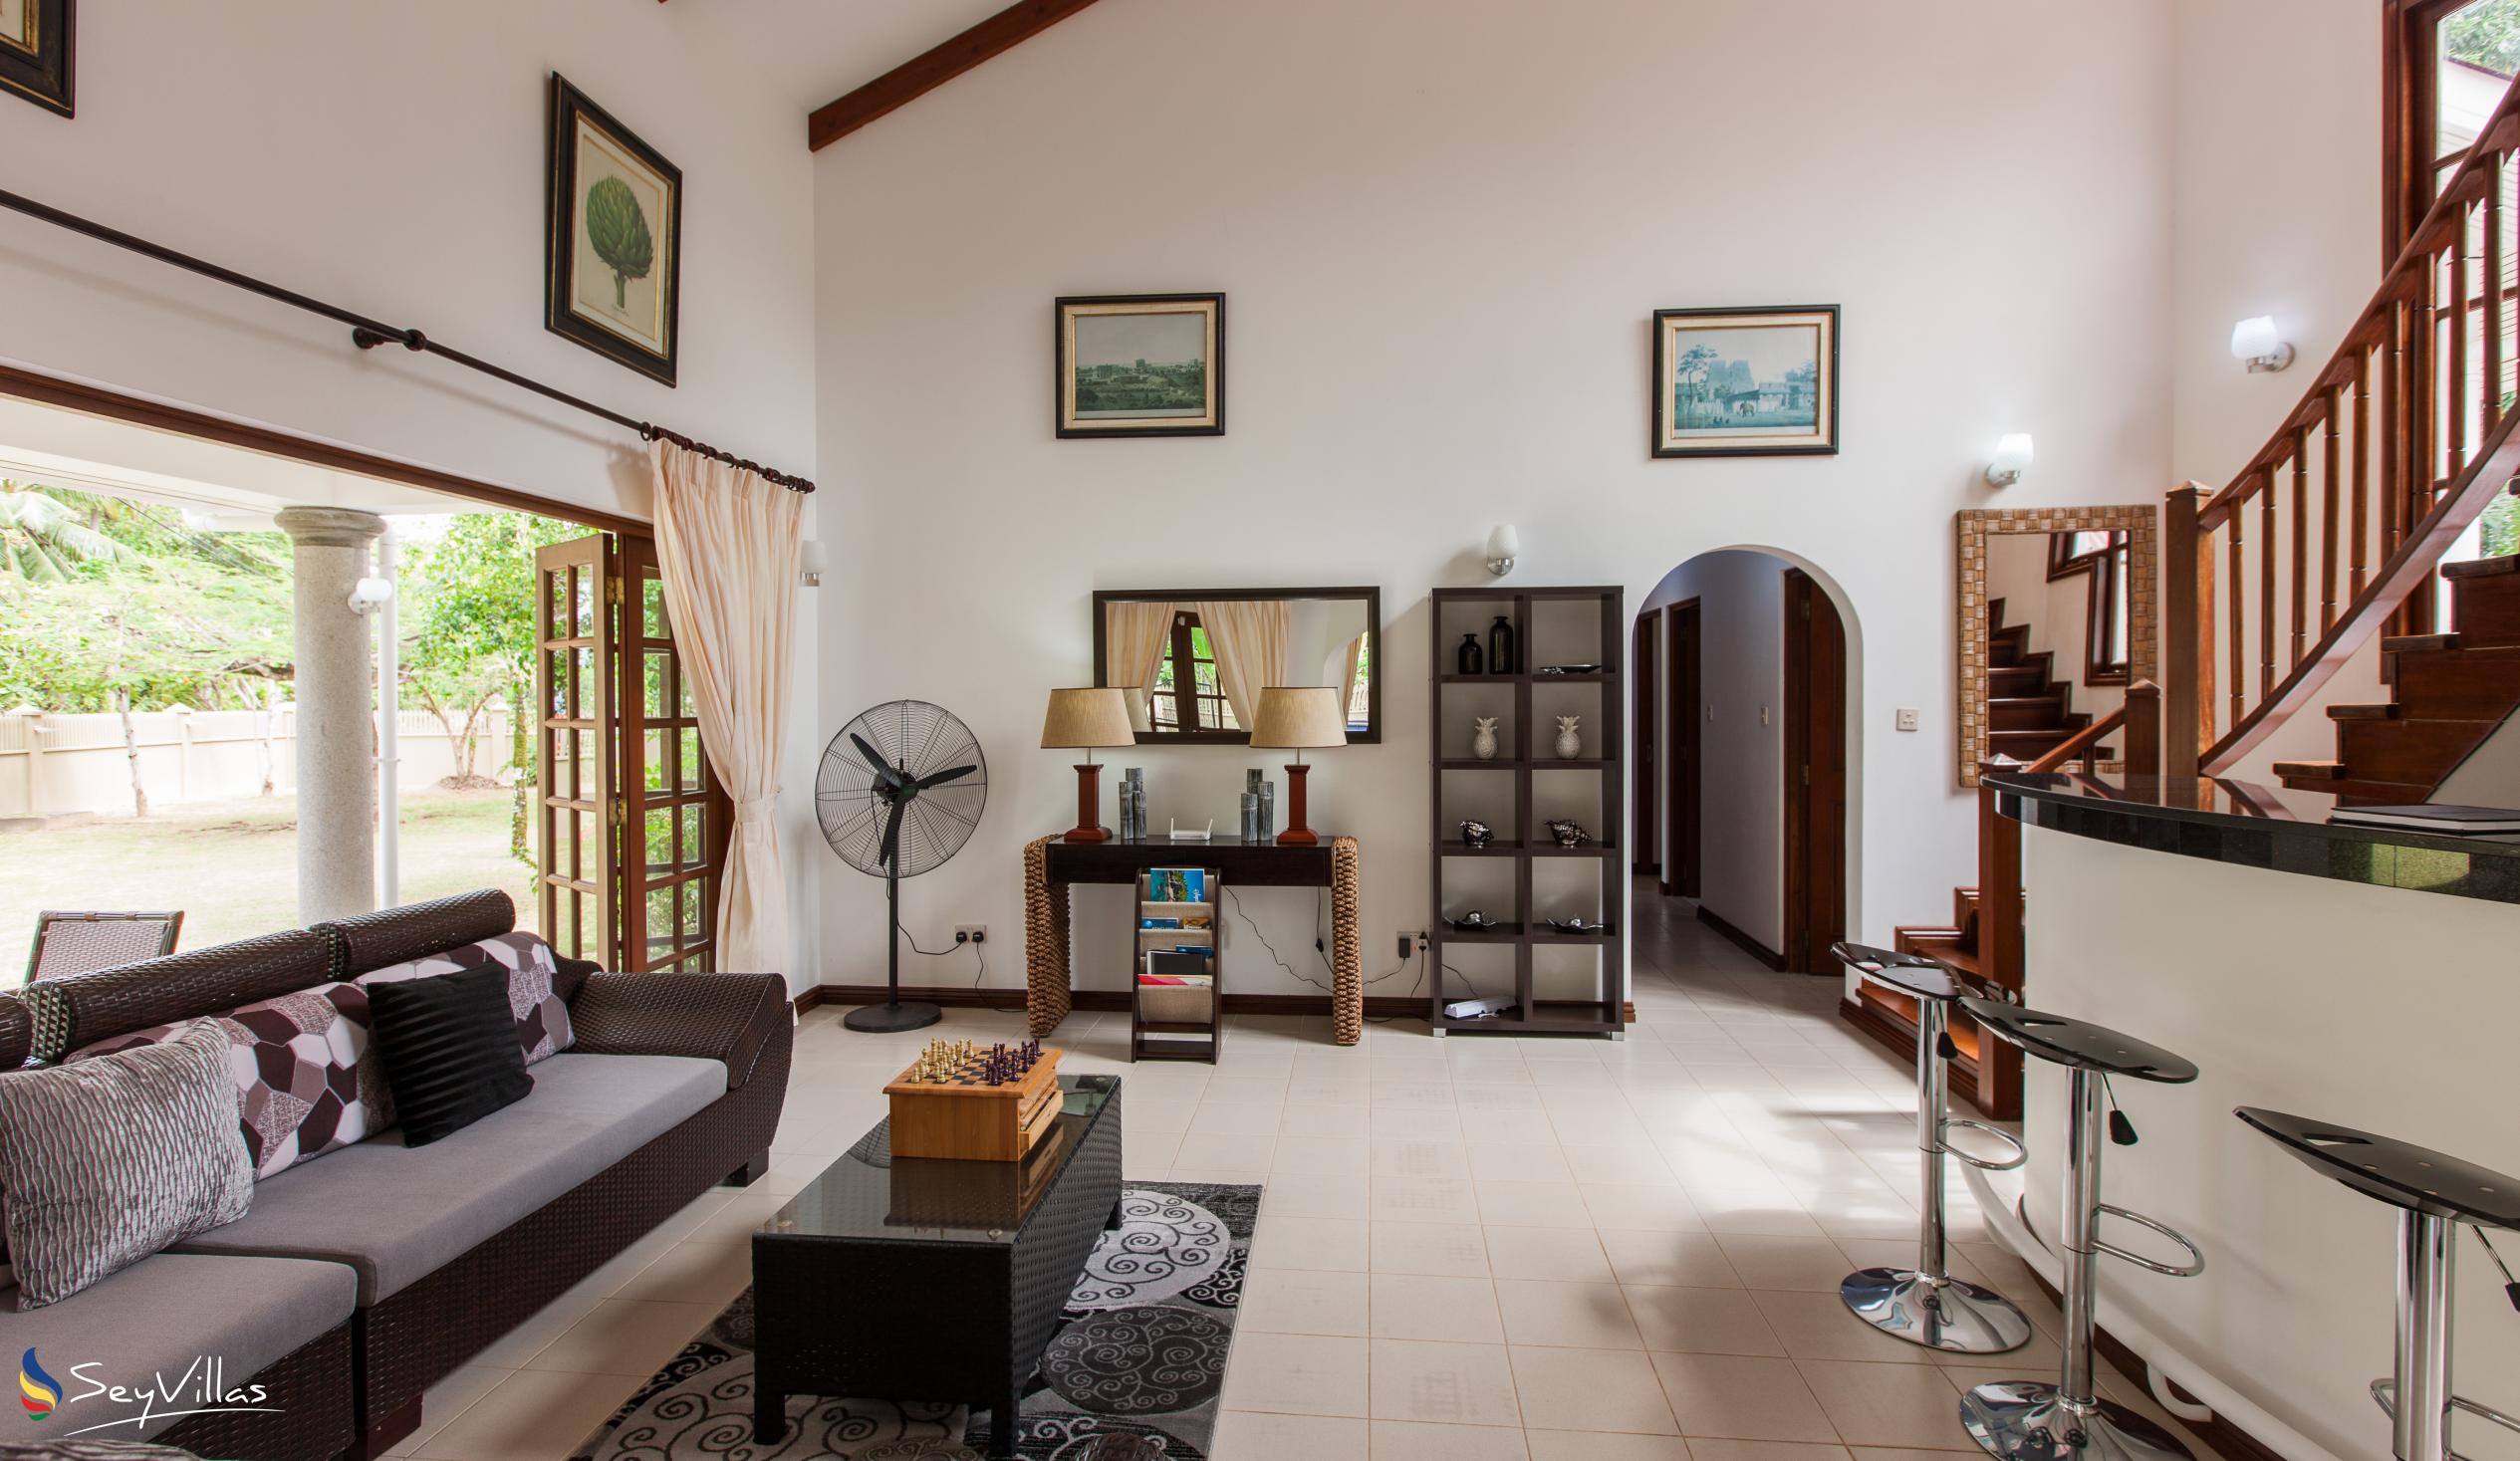 Photo 12: Villa Saint Sauveur - Indoor area - Praslin (Seychelles)